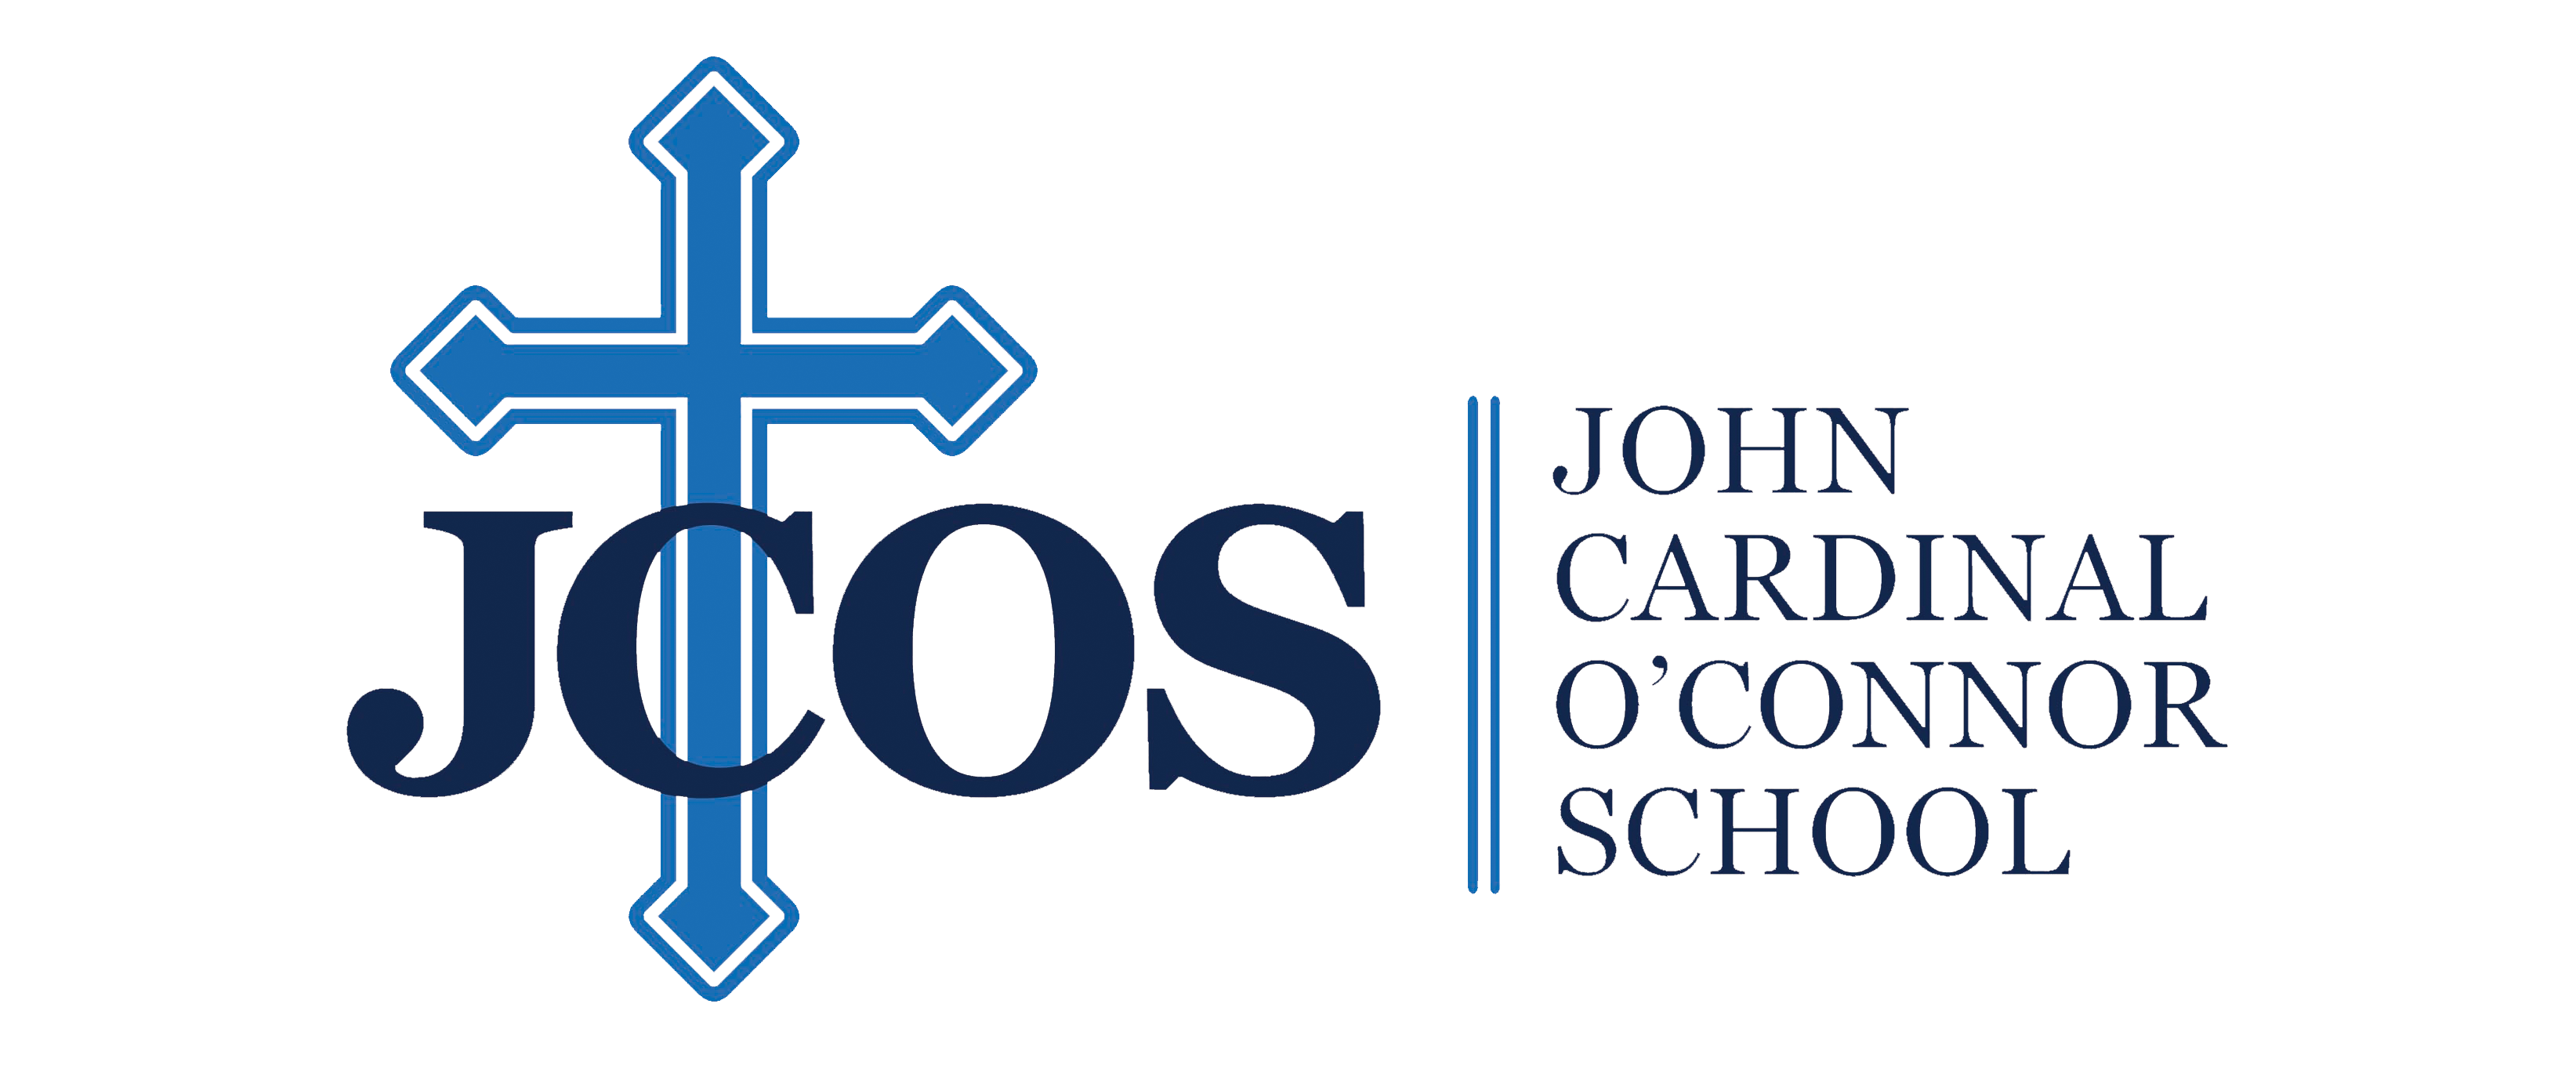 John Cardinal O'Connor School